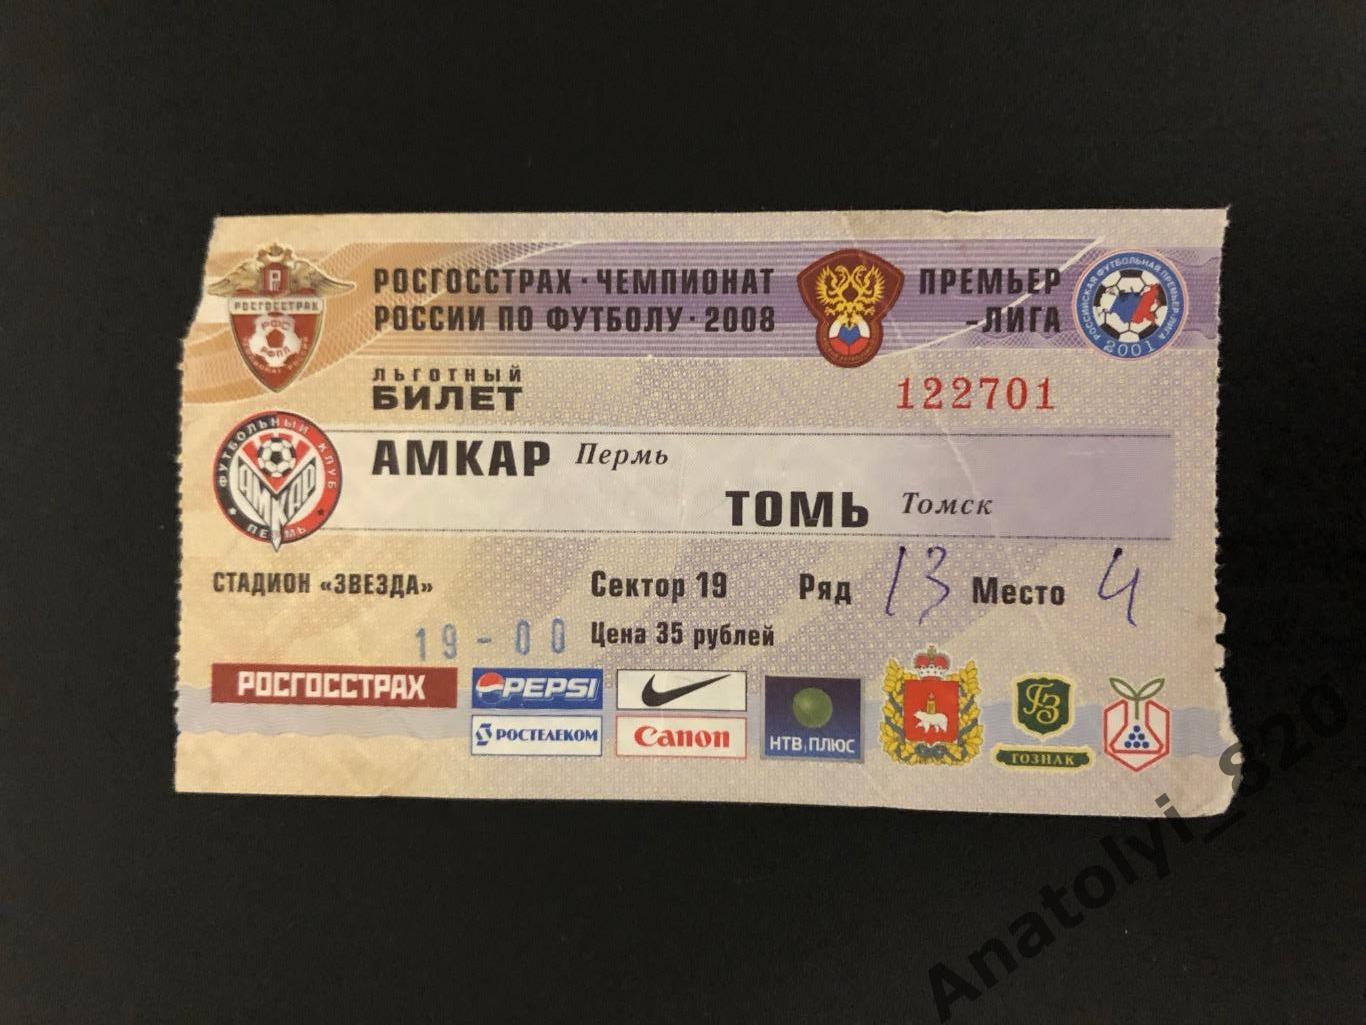 Амкар Пермь - Томь Томск, 26.07.2008, билет